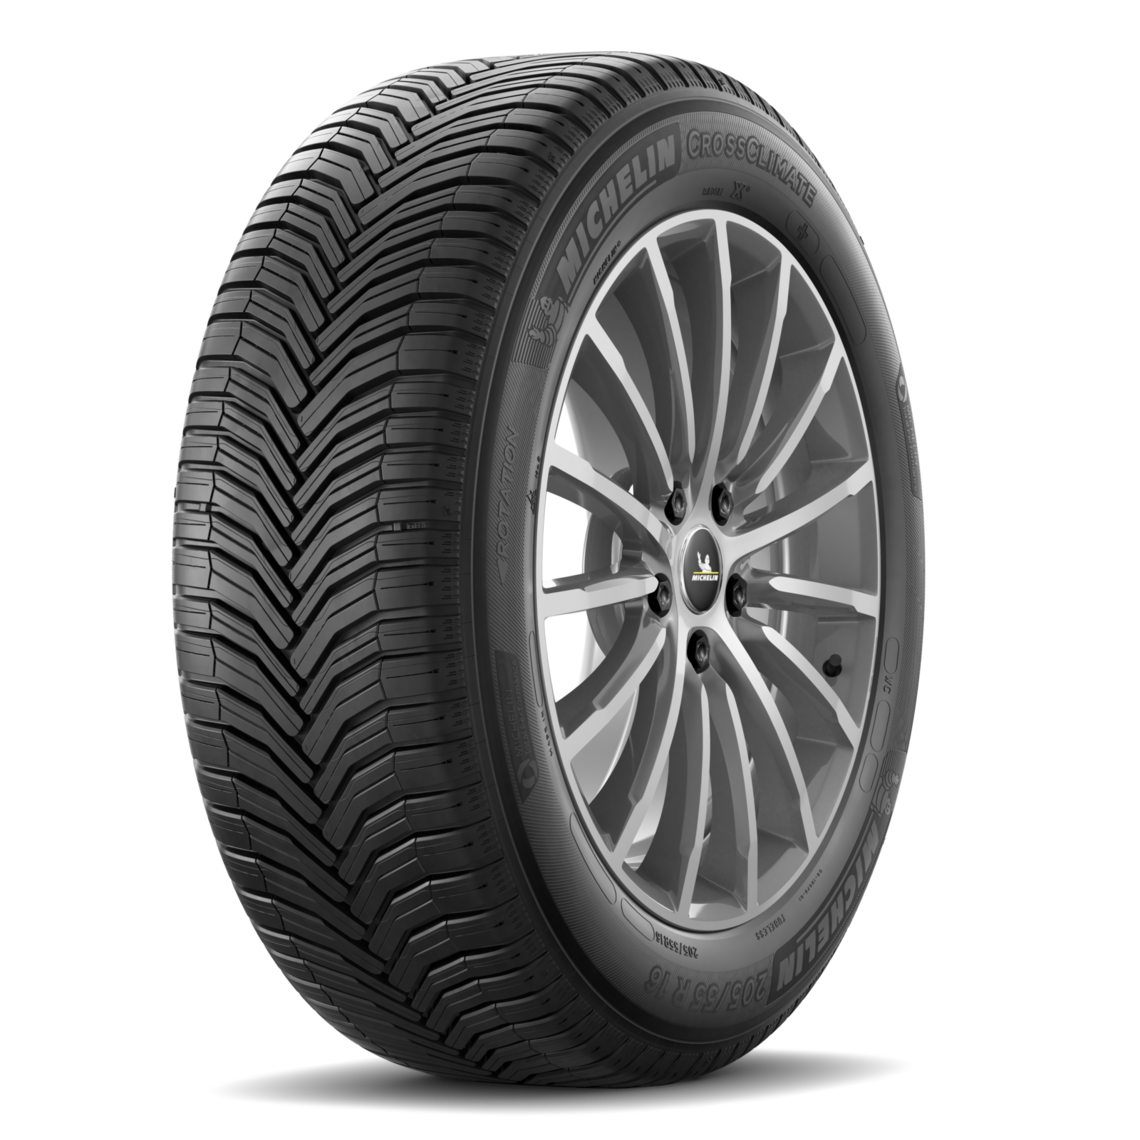 Gomme Nuove Michelin 235/55 R19 101V CrossClimate 2 SUV M+S pneumatici nuovi All Season